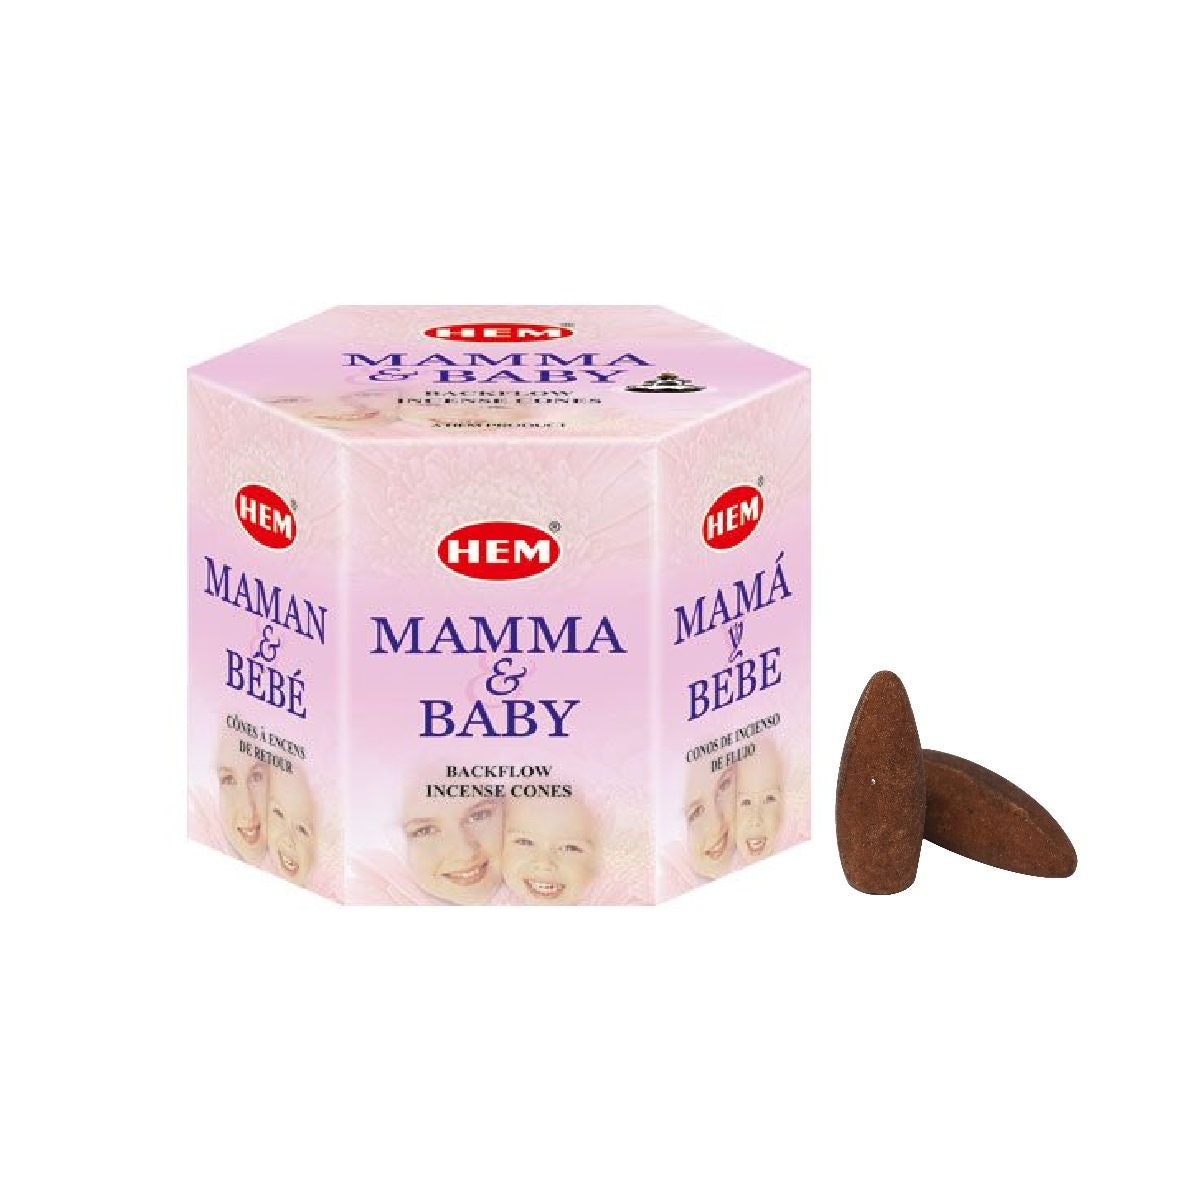 Hem Mama & Baby Backflow Cones in Box